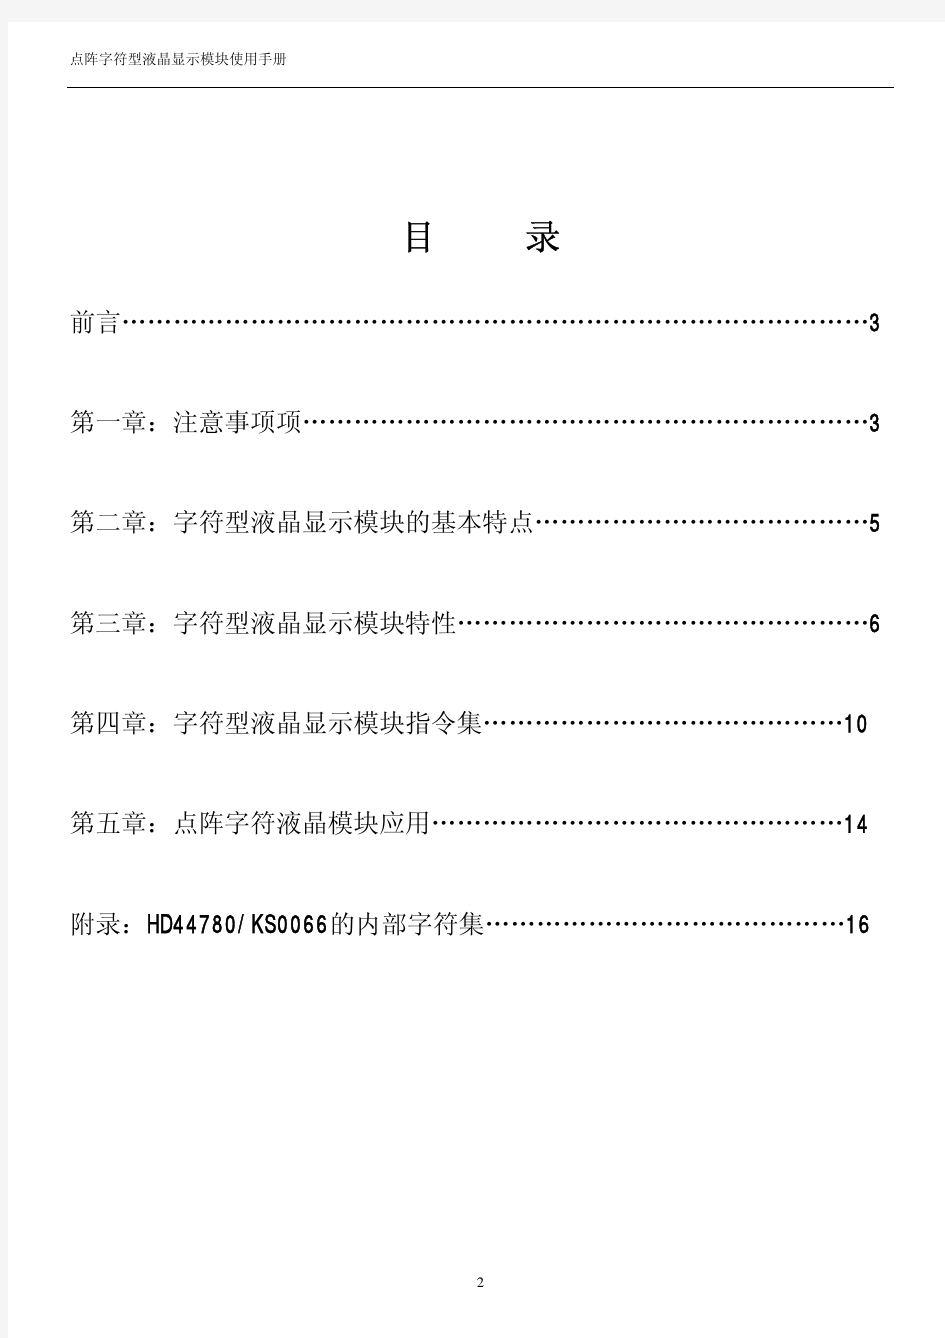 HD44780(KS0066)中文数据手册